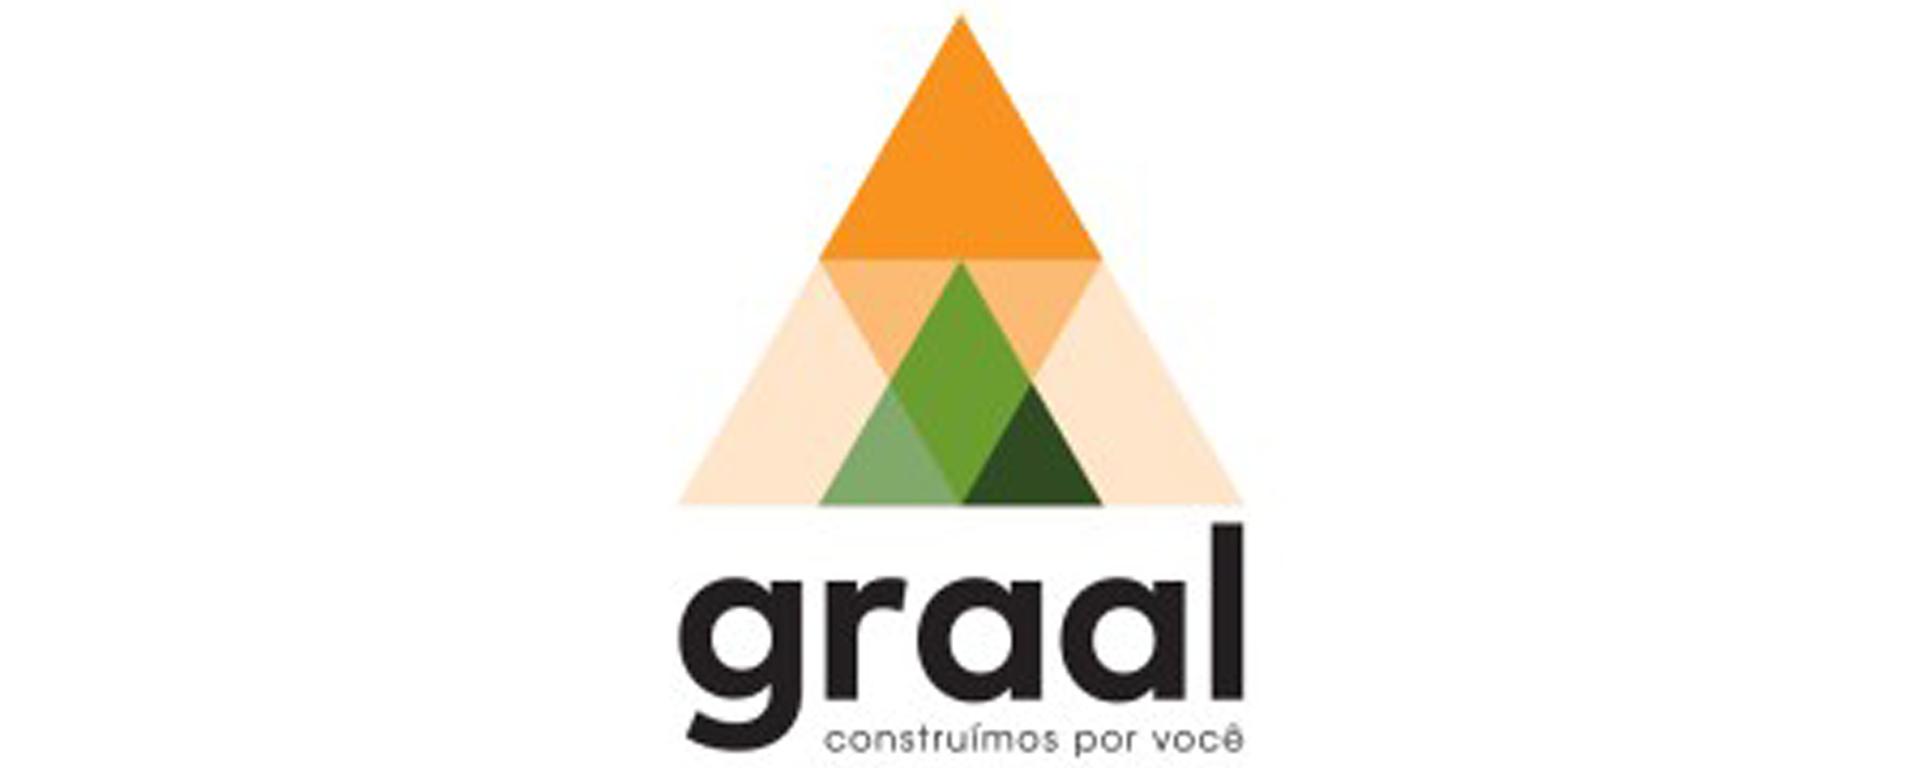 graal_engenharia_logo - site